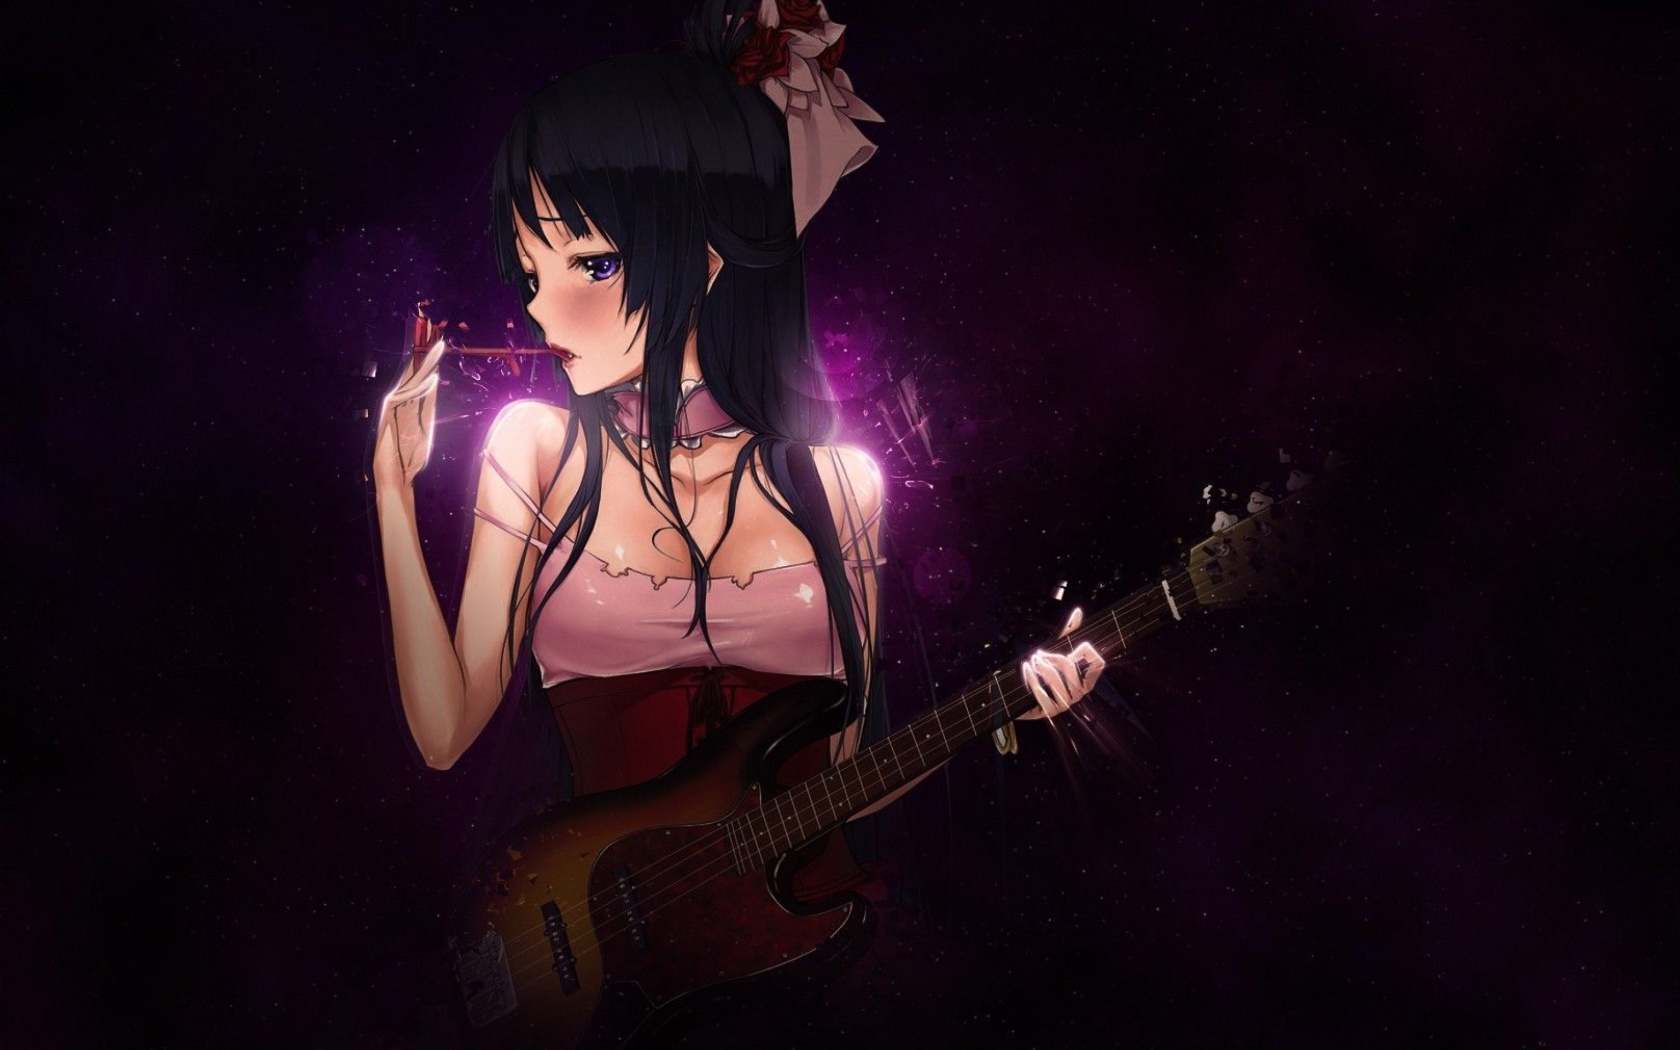 Обои Anime Girl with Guitar 1680x1050